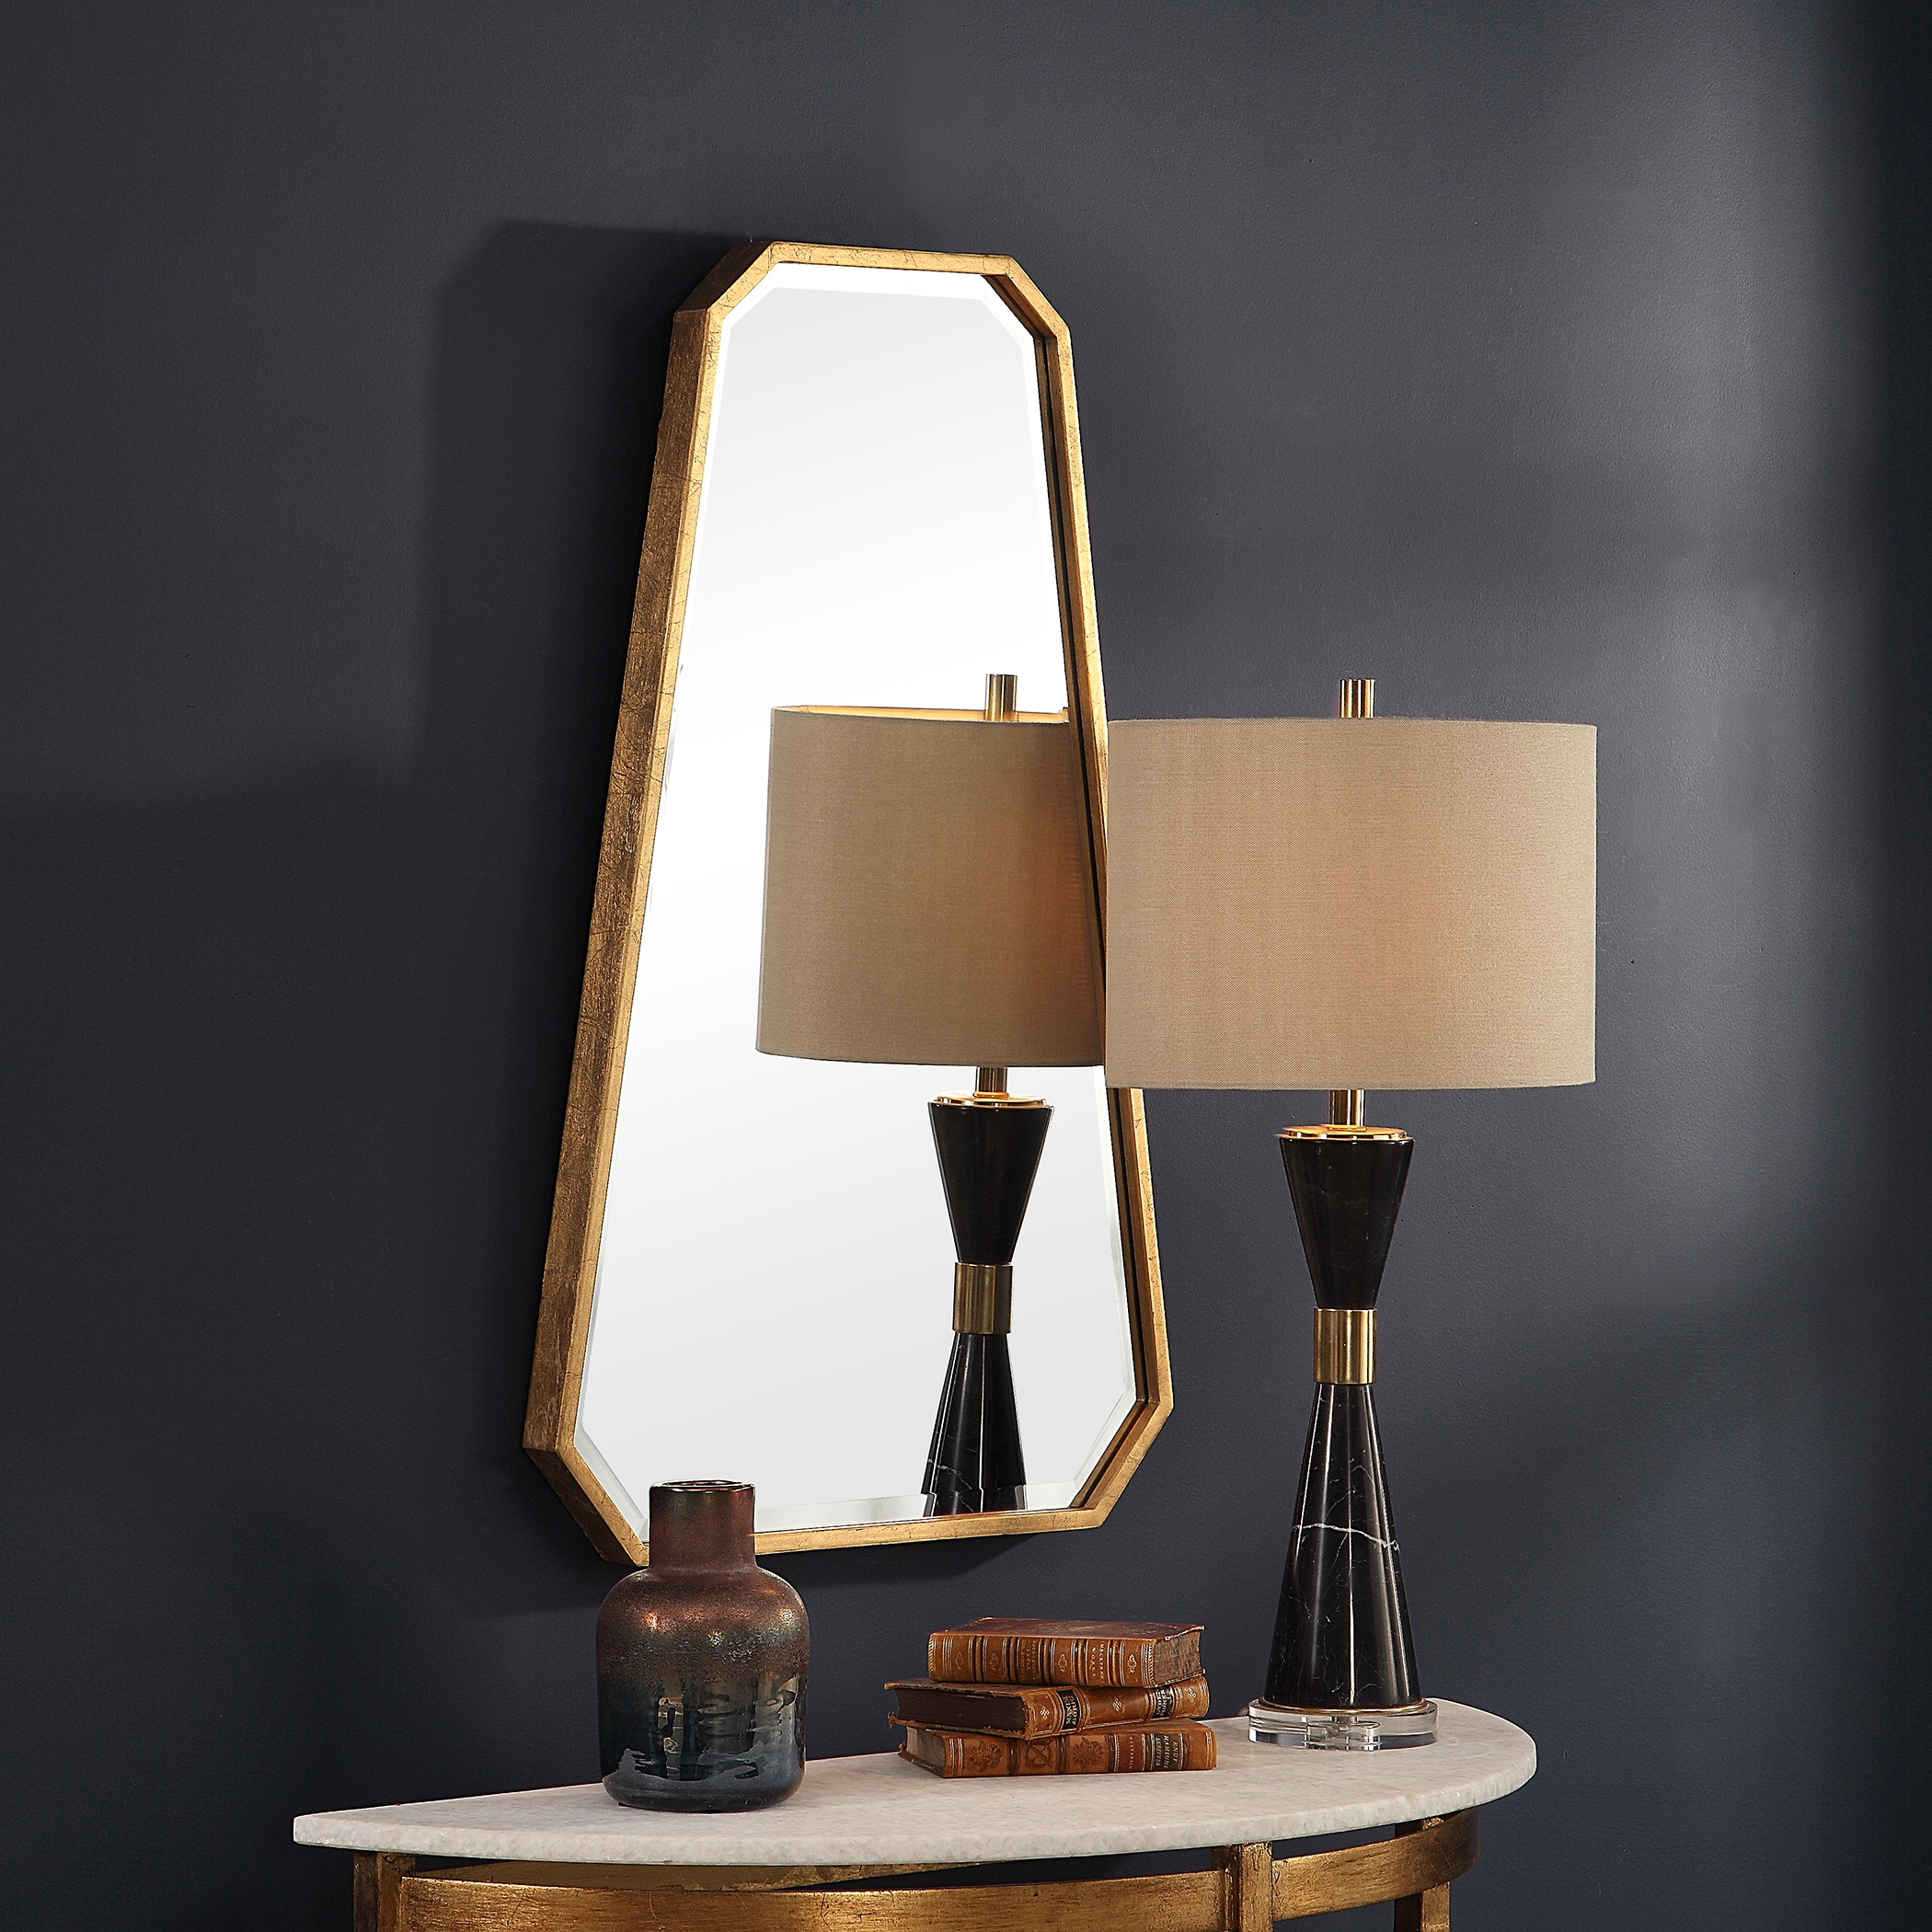 Ottone Modern Mirror - Image 2